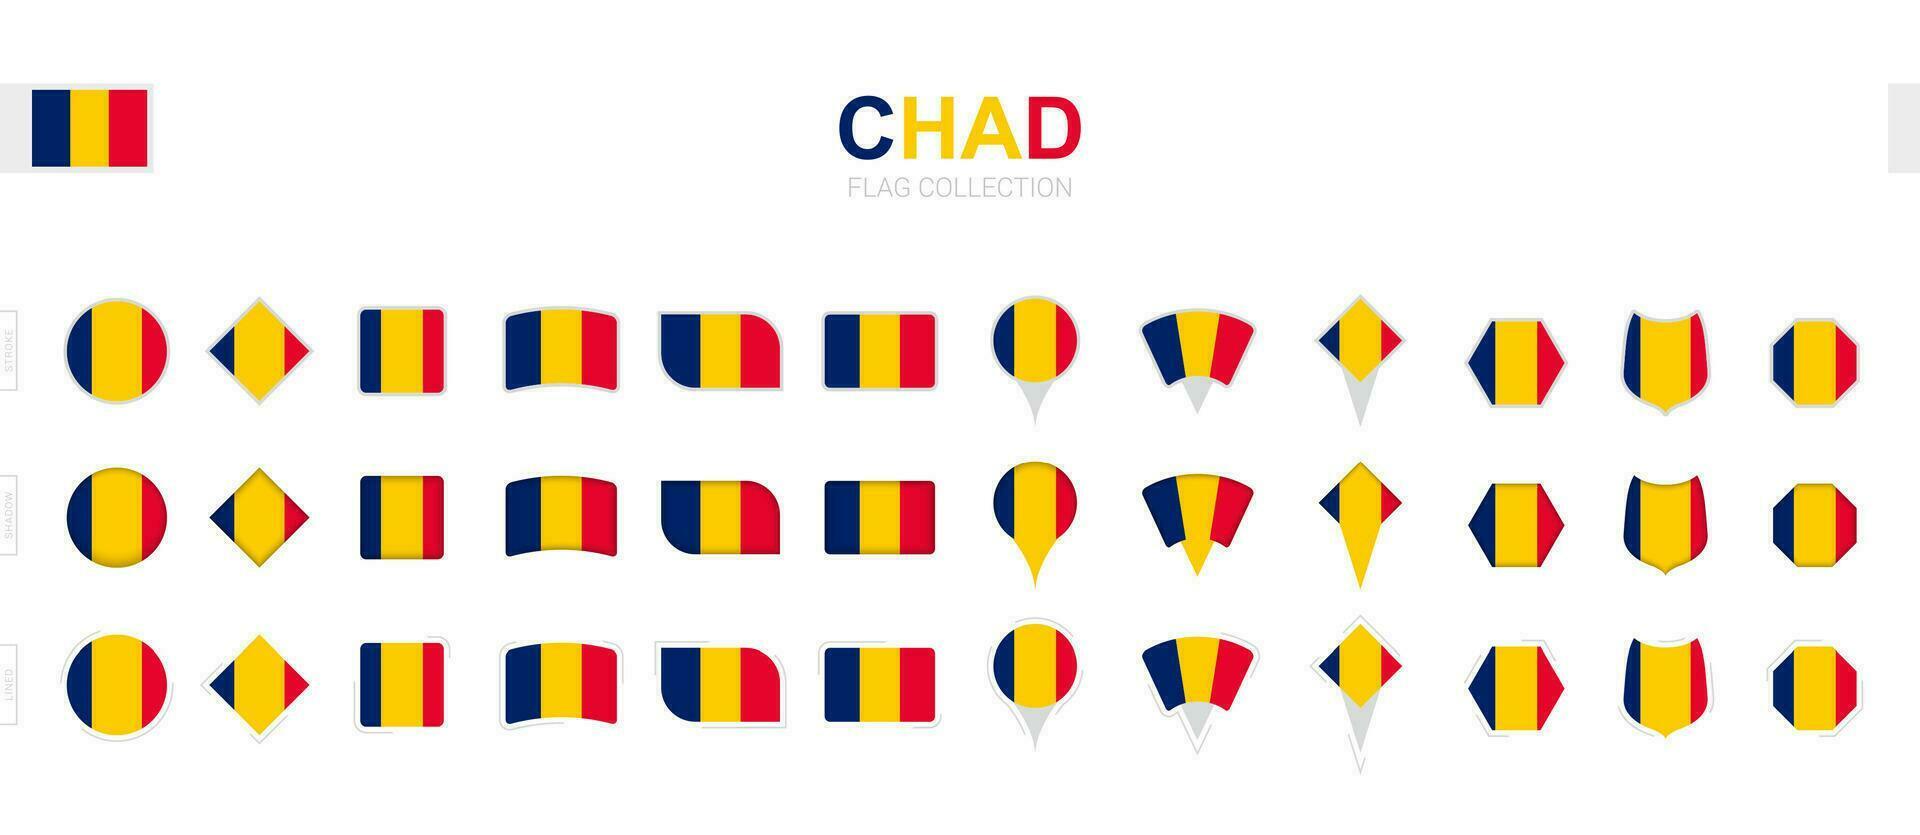 grande colección de Chad banderas de varios formas y efectos vector